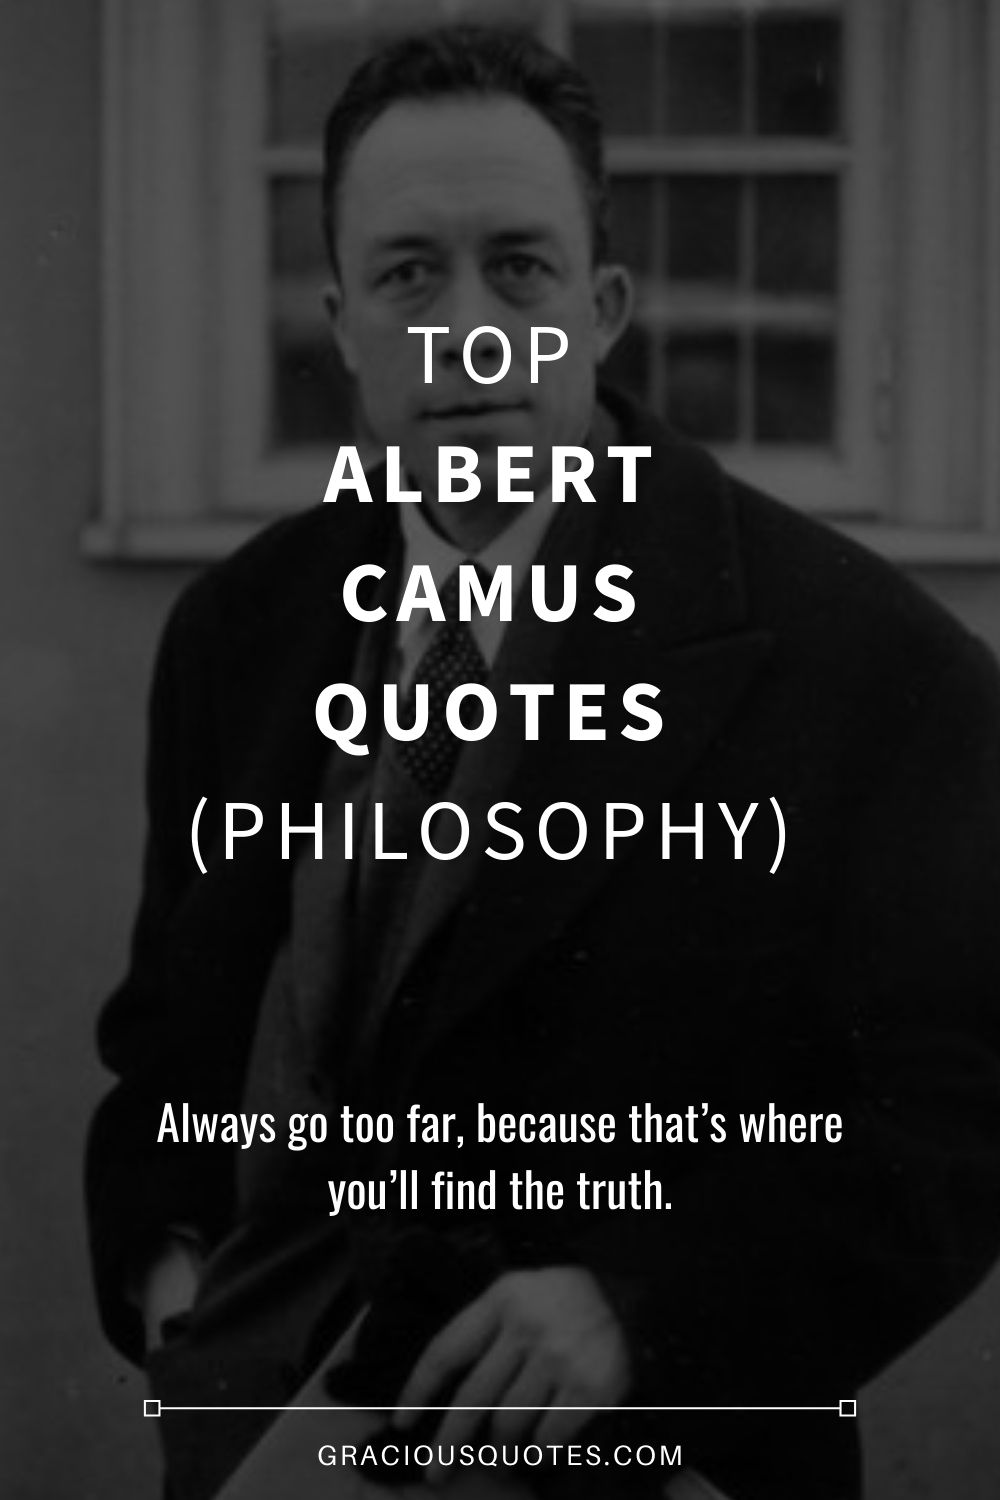 Top Albert Camus Quotes (PHILOSOPHY) - Gracious Quotes